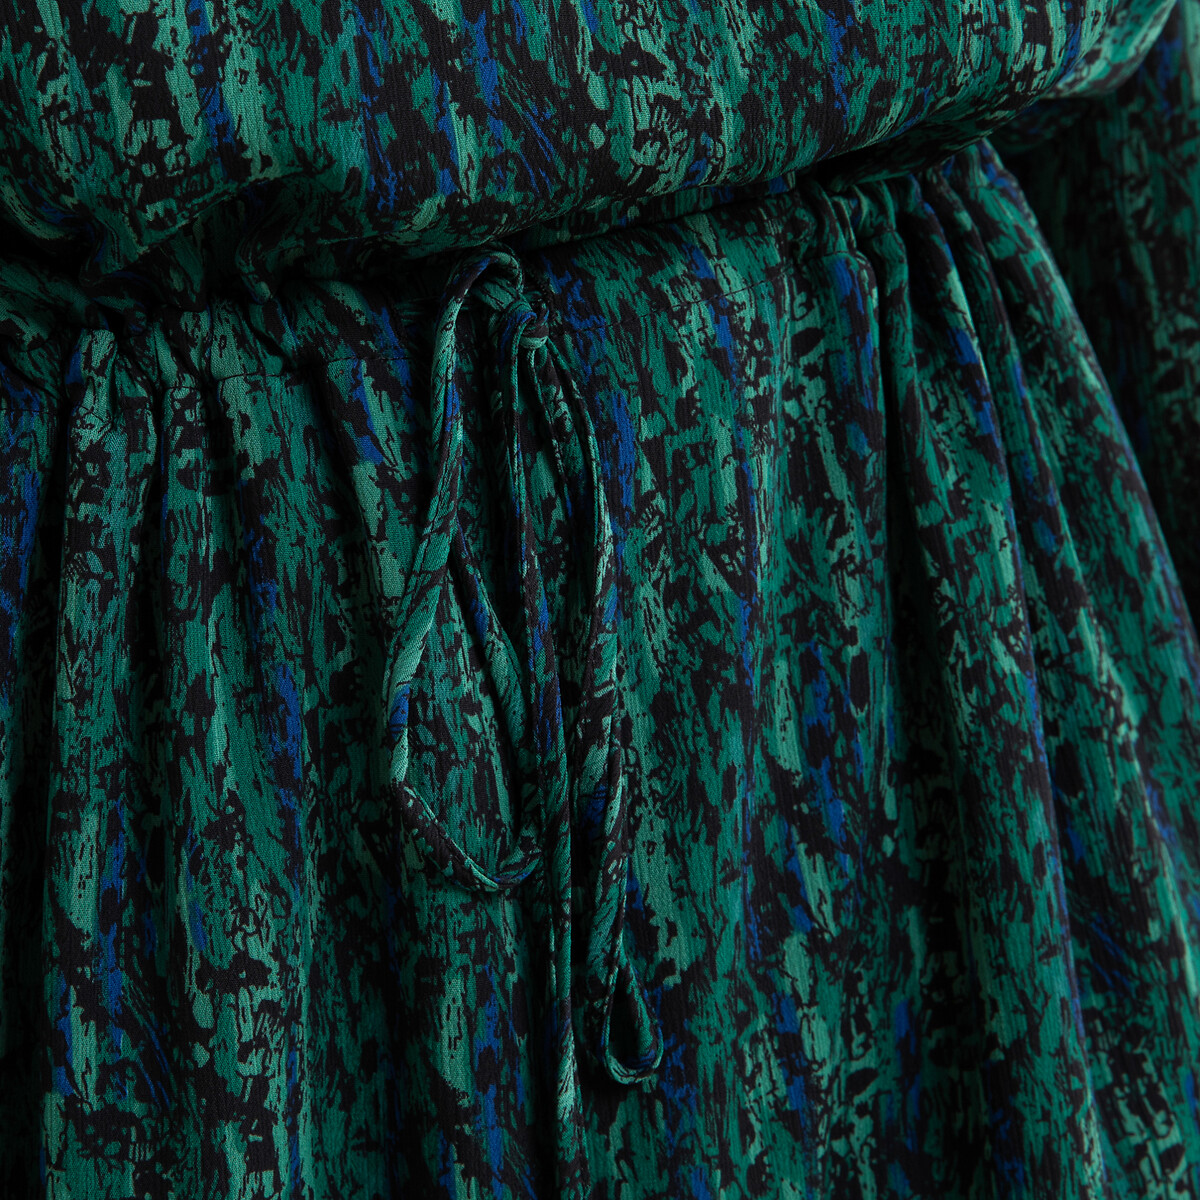 Платье La Redoute Из вуали с принтом длинное с длинными рукавами 40 (FR) - 46 (RUS) зеленый, размер 40 (FR) - 46 (RUS) Из вуали с принтом длинное с длинными рукавами 40 (FR) - 46 (RUS) зеленый - фото 4